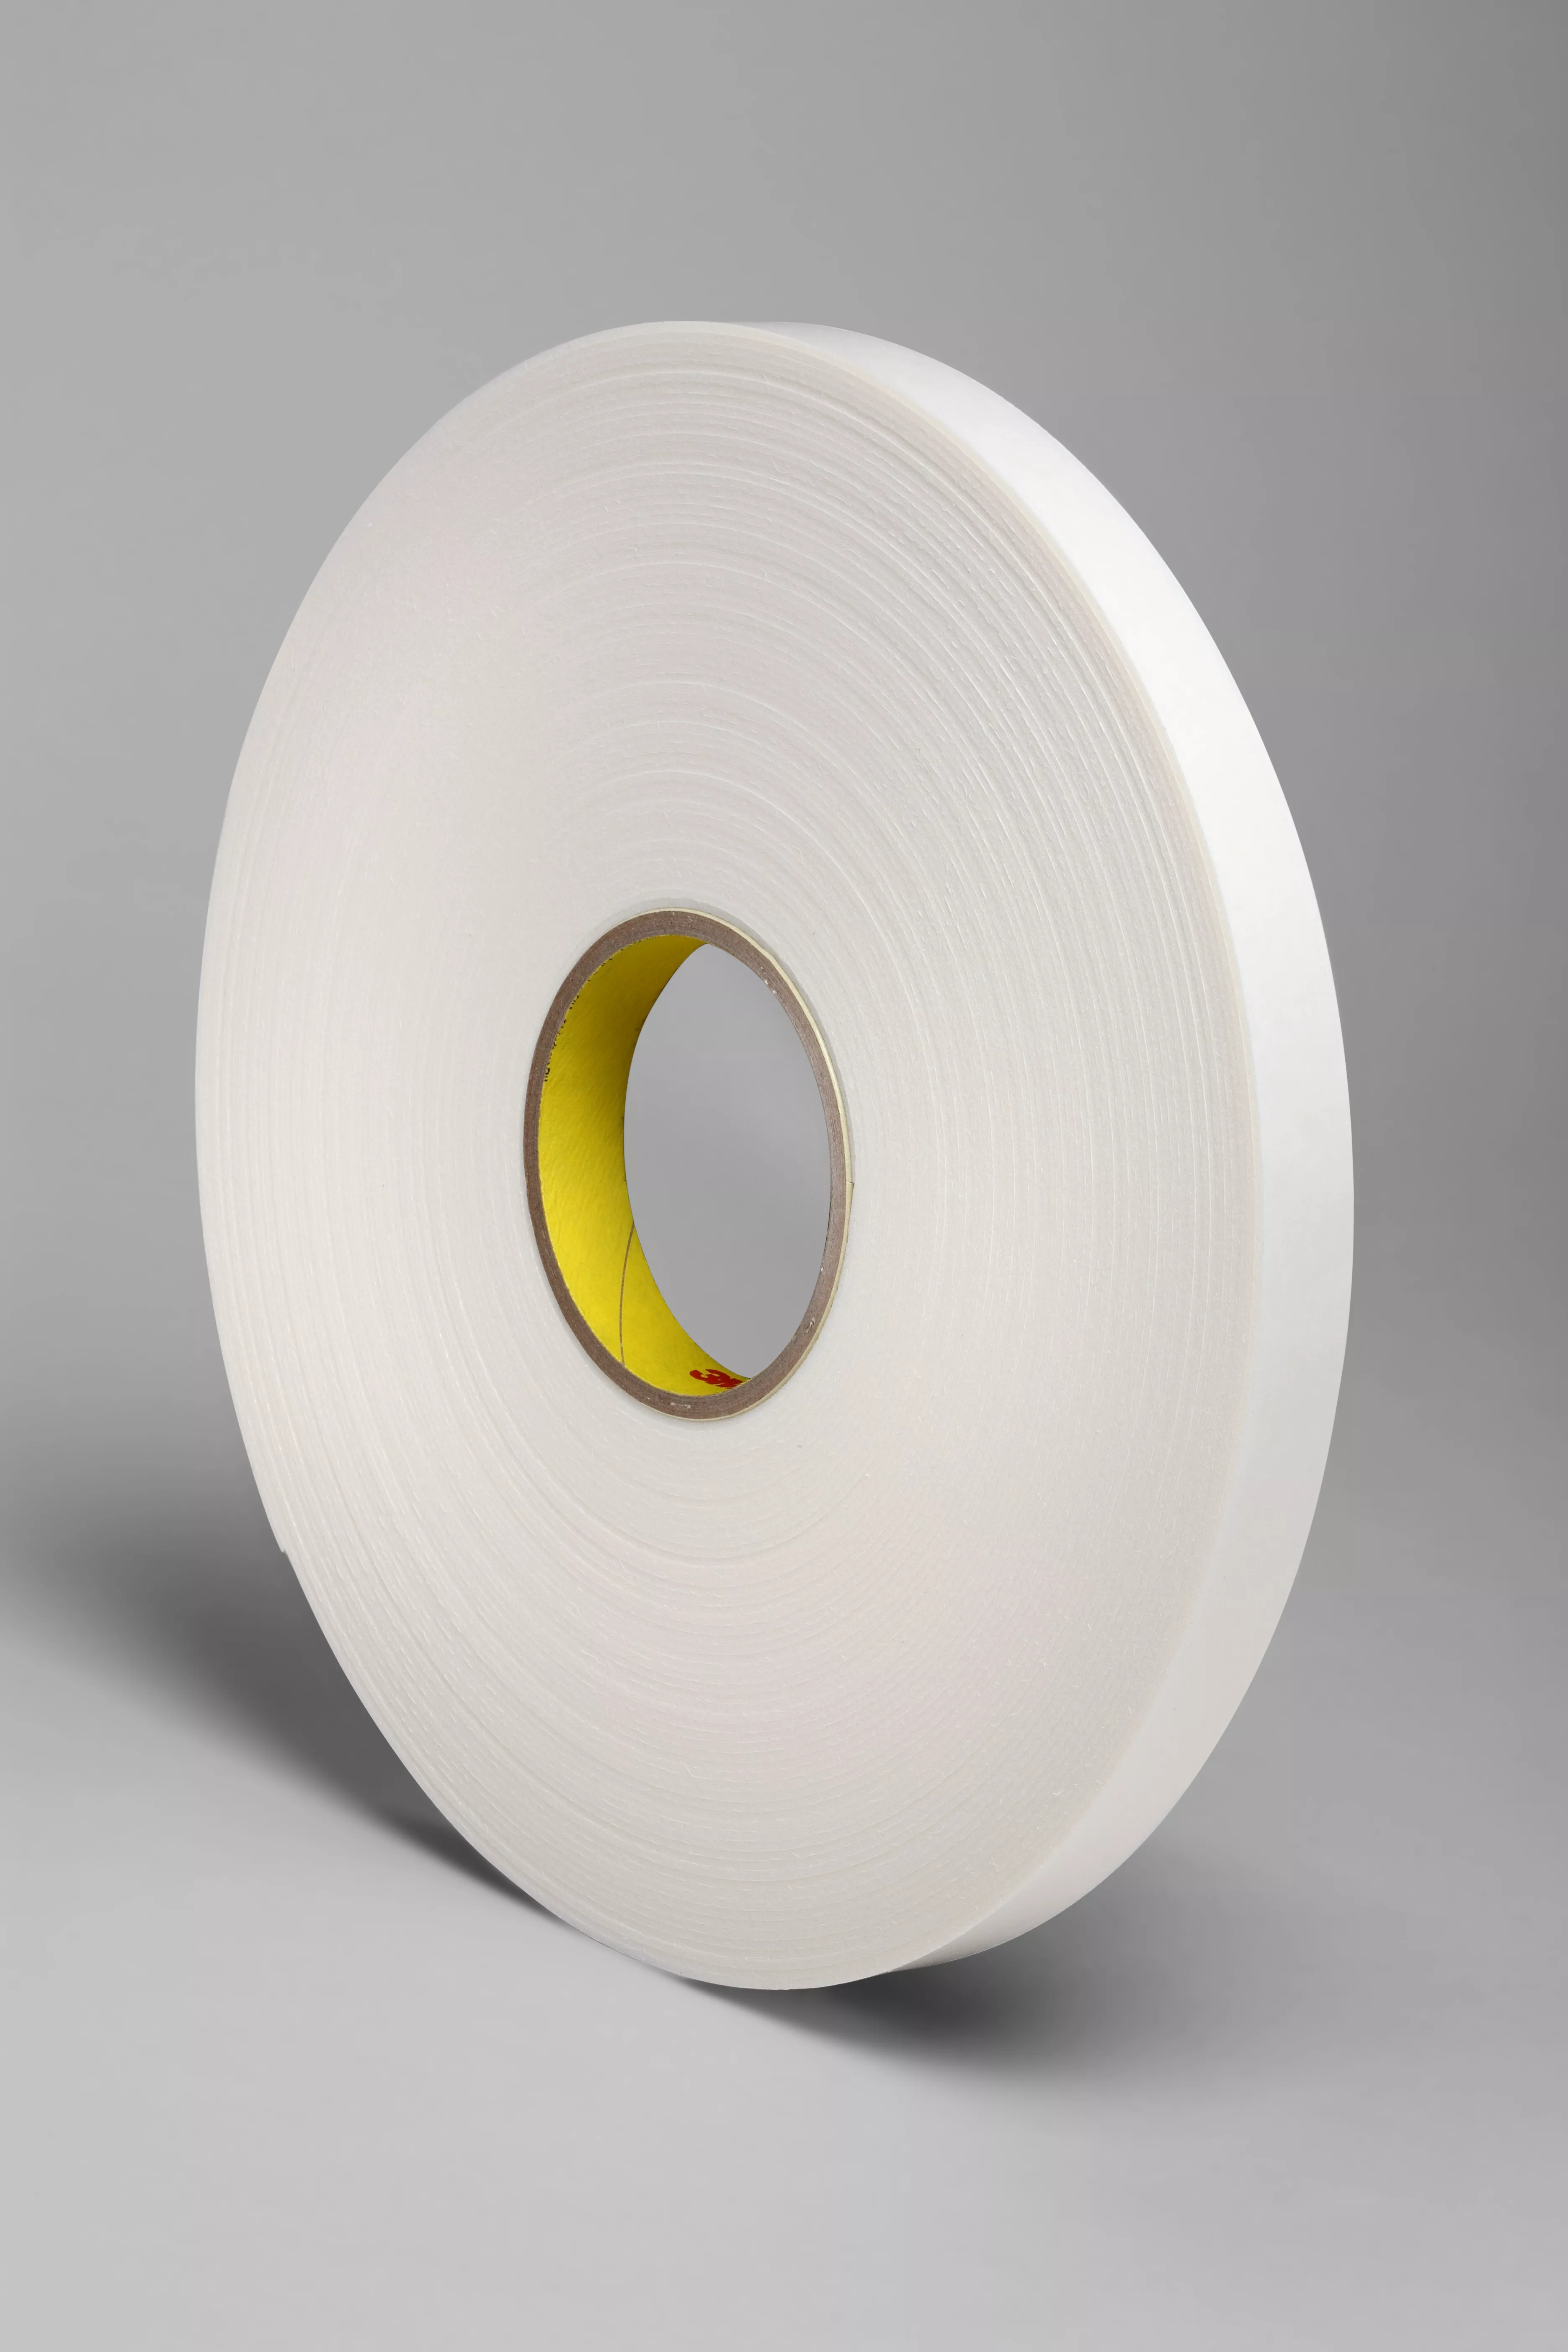 3M™ Double Coated Polyethylene Foam Tape 4466, White, 3/4 in x 36 yd, 62
mil, 12 Roll/Case